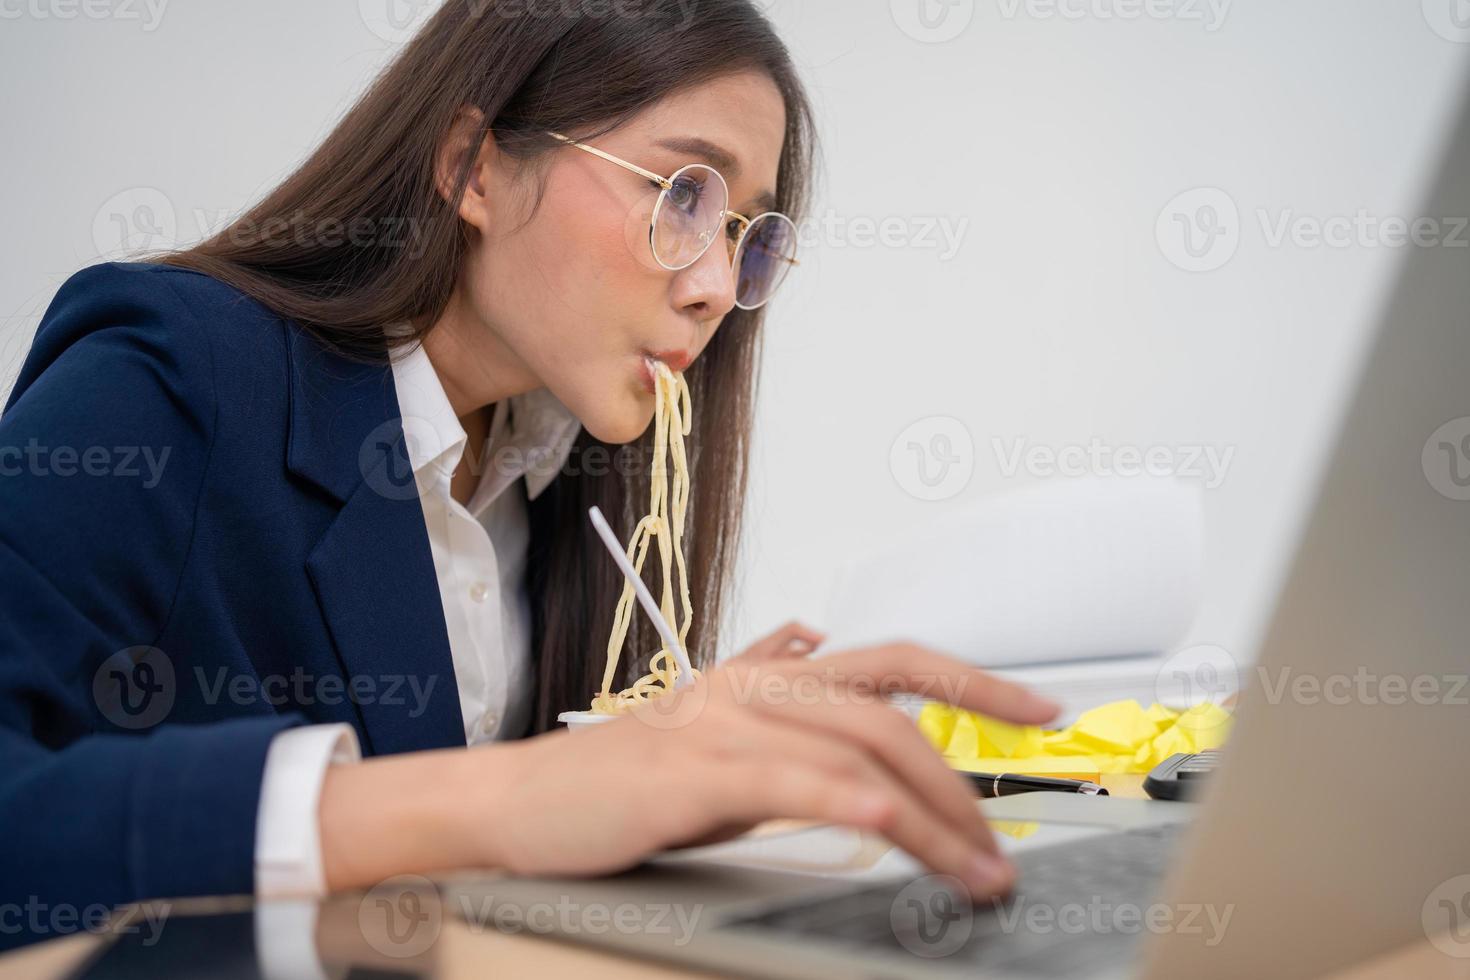 Beschäftigte und müde Geschäftsfrau, die Spaghetti zum Mittagessen im Büro isst und daran arbeitet, einem Chef Jahresabschlüsse zu liefern. überarbeitet und ungesund für Fertiggerichte, Burnout-Konzept. foto